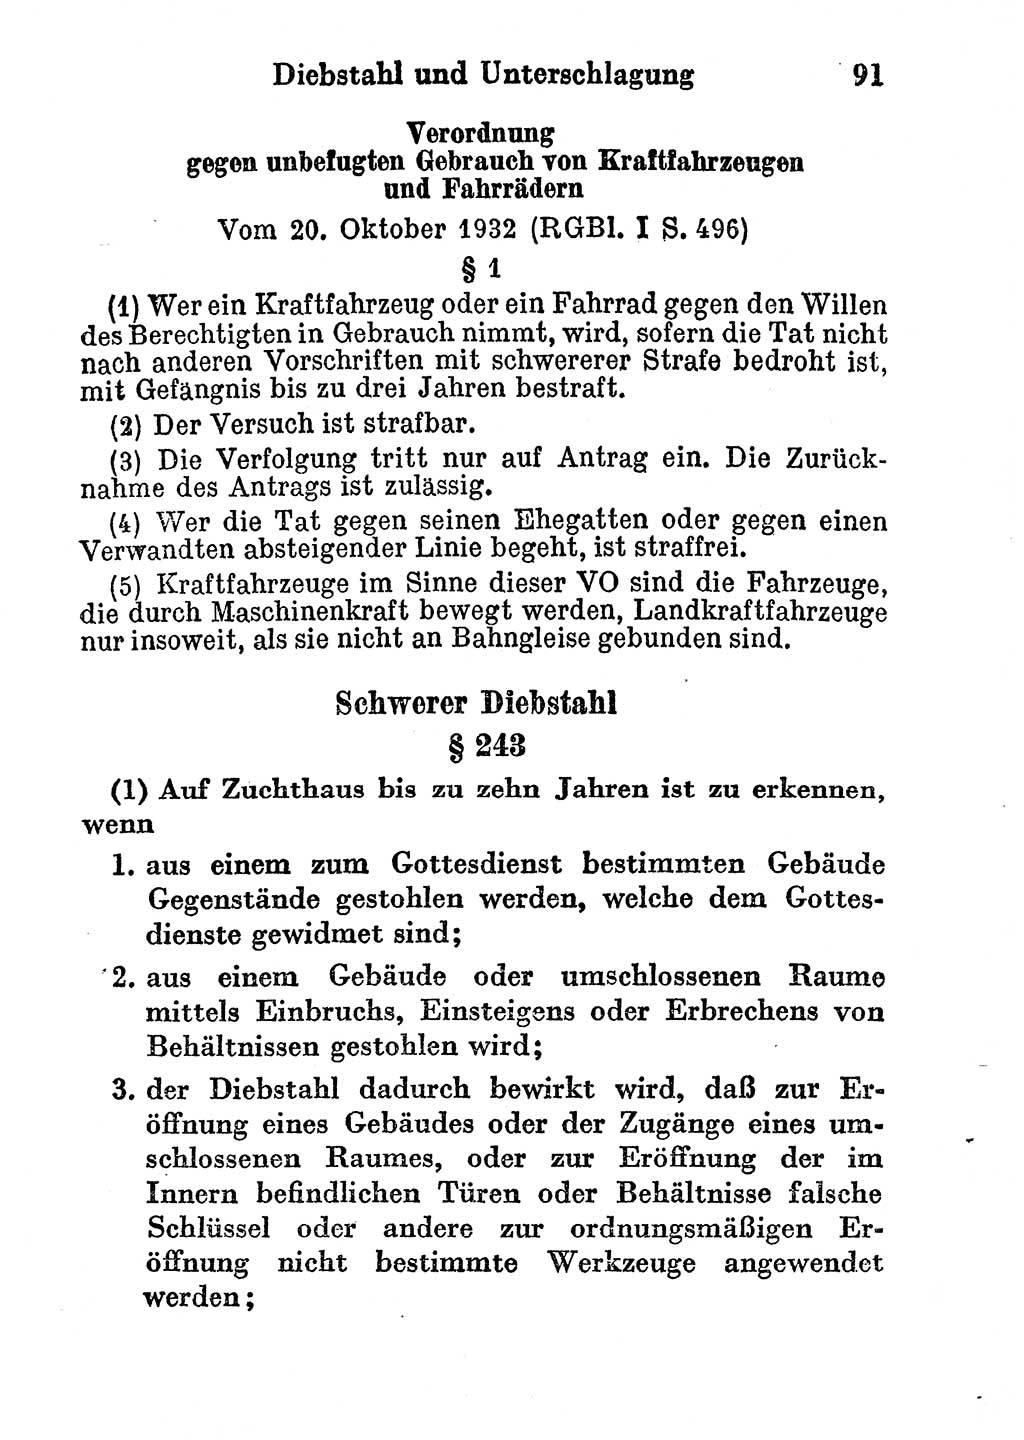 Strafgesetzbuch (StGB) und andere Strafgesetze [Deutsche Demokratische Republik (DDR)] 1956, Seite 91 (StGB Strafges. DDR 1956, S. 91)